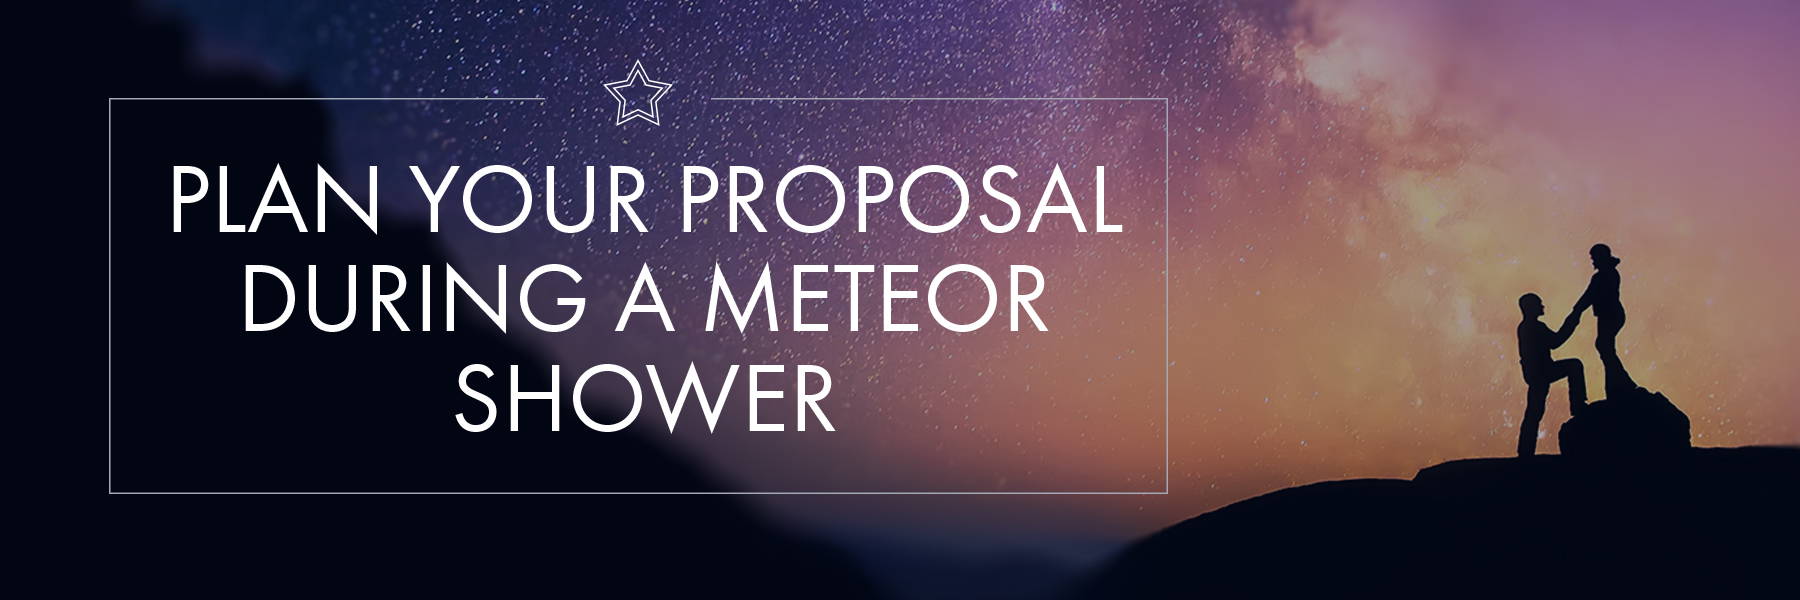 Unique Proposal Idea: Propose During a Meteor Shower